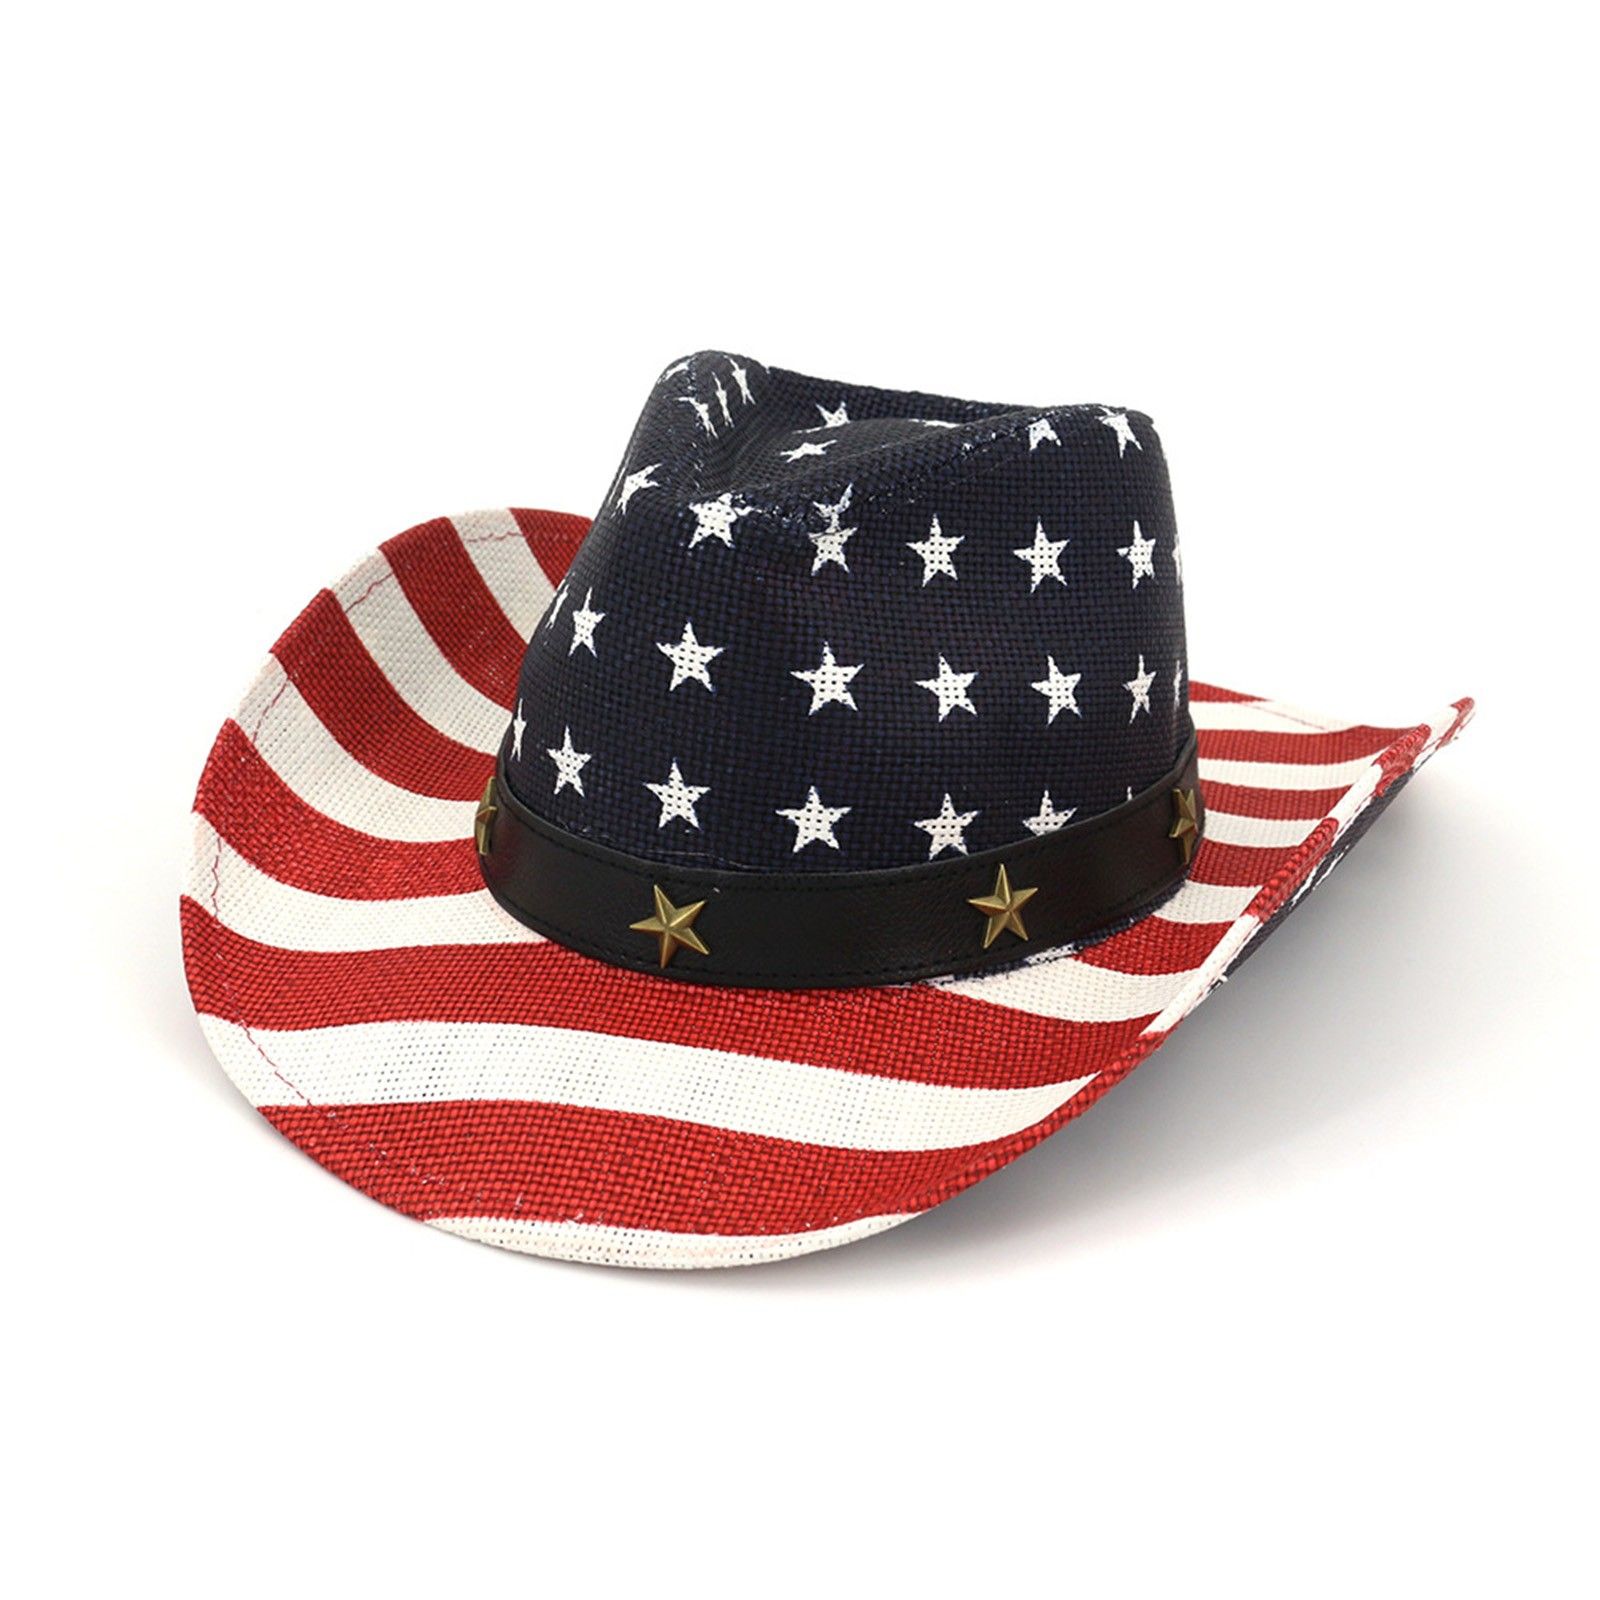 Шляпа америка. Американский головной убор. Шляпа с американским флагом. Американские Пилигримы в шляпах.